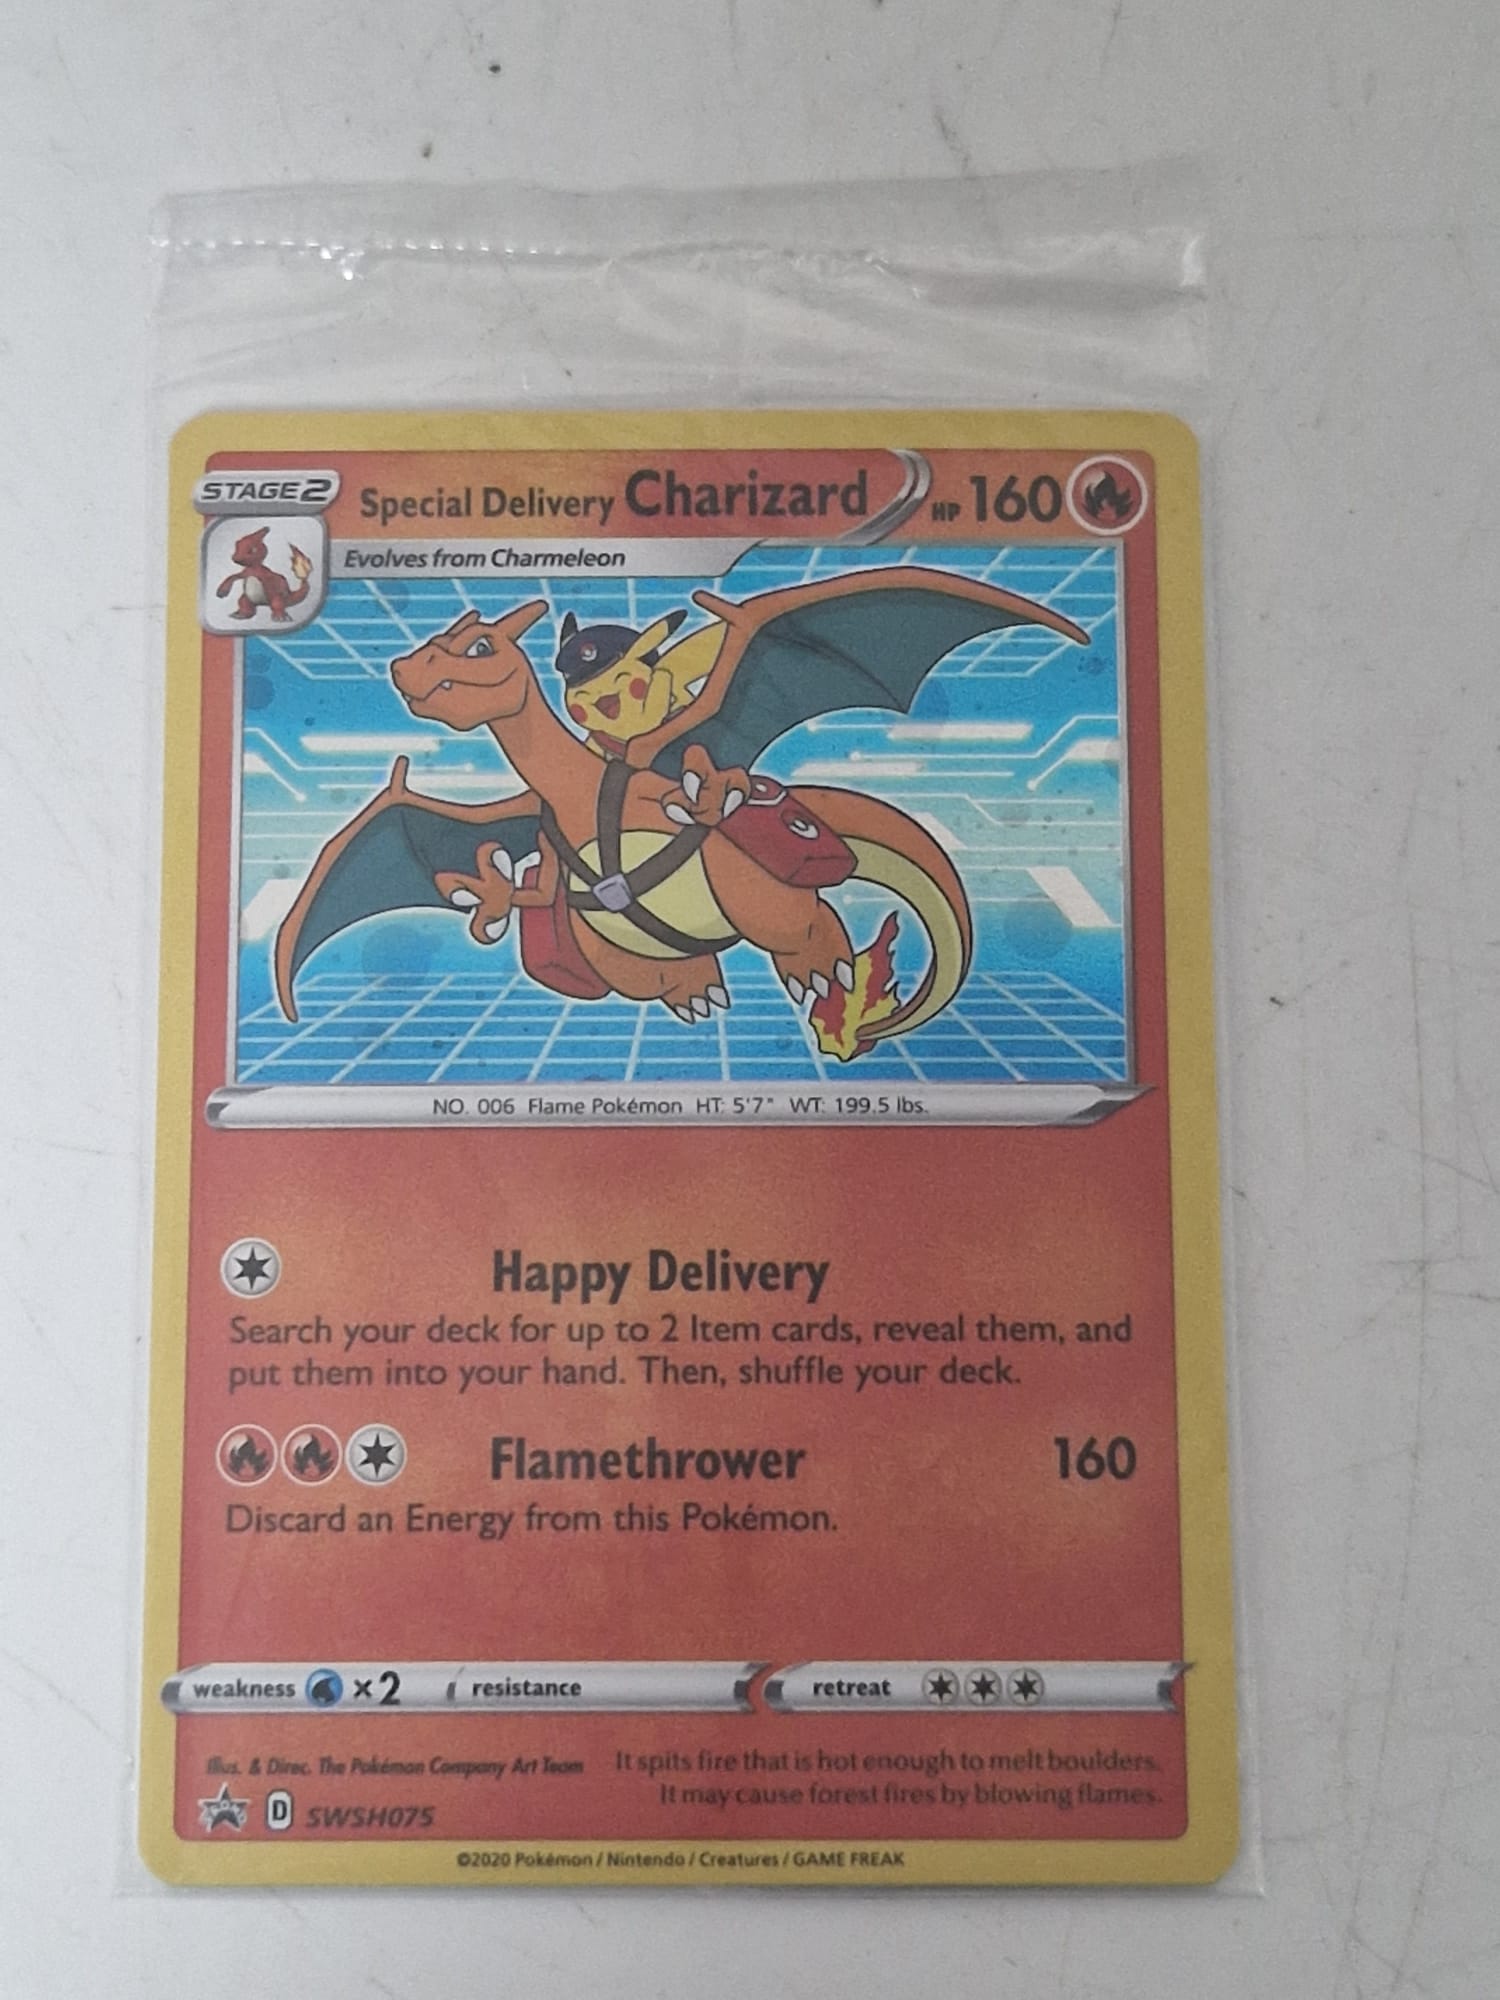 Charizard - Pokémon TCG Special Delivery Charizard SWSH075 - Sealed